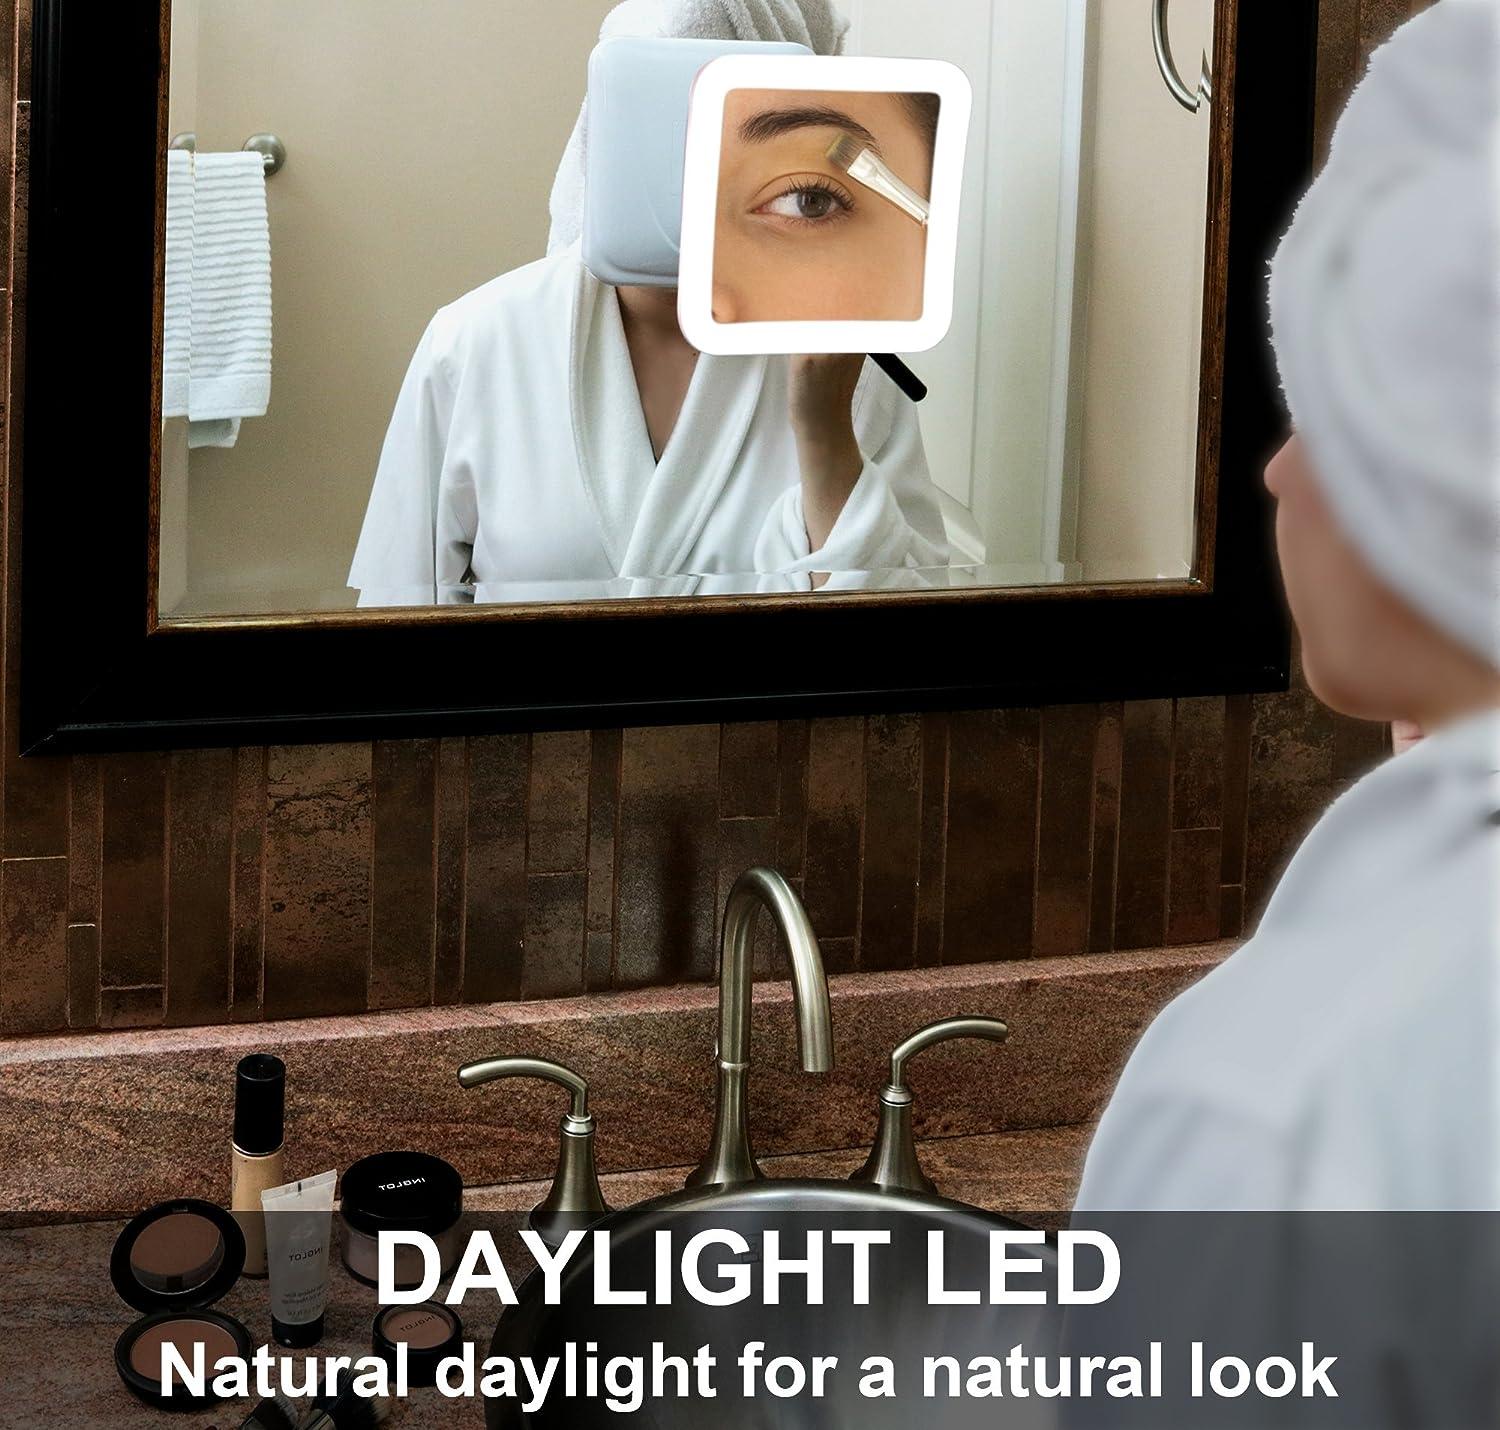 Espejo de Maquillaje con Aumento de 10X con Luz LED Espejo de Aumento de  10X con Luz de Relleno LED con Ventosa Espejo de Maquillaje con Cuello de  Cisne Ajustable Espejo de